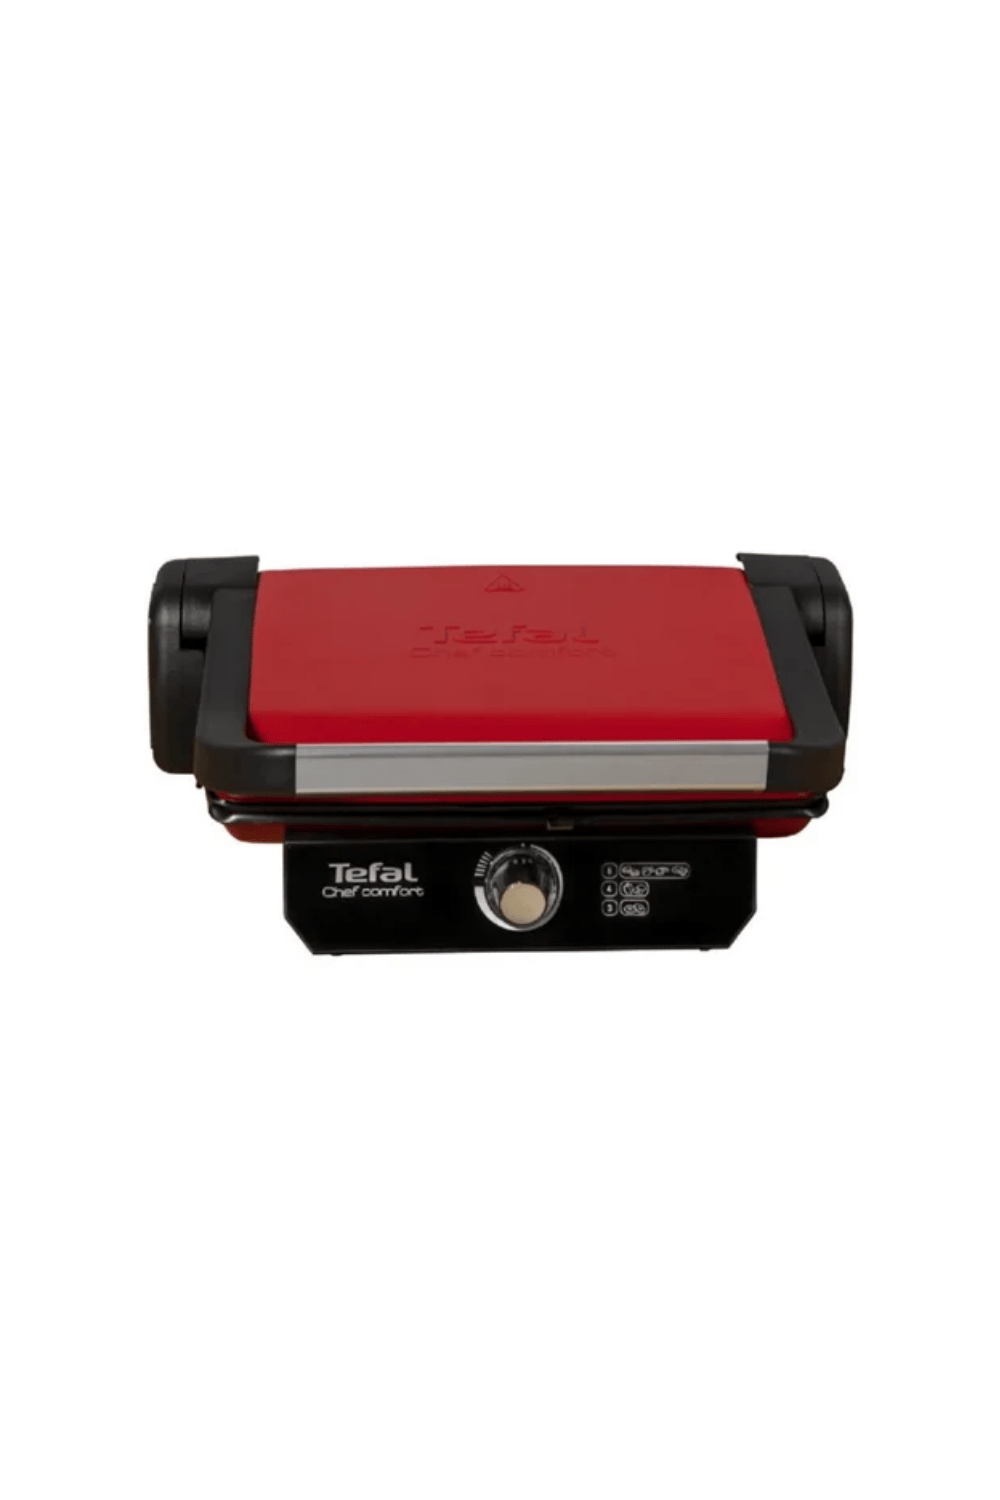 Tefal Chef Comfort Kırmızı Tost Makinesi 1800W (Teşhir & Outlet) -  9100040086 - Teşhir & Outlet Fırsatlarıyla | En Uygun Fiyatlar ve Hızlı  Kargo!